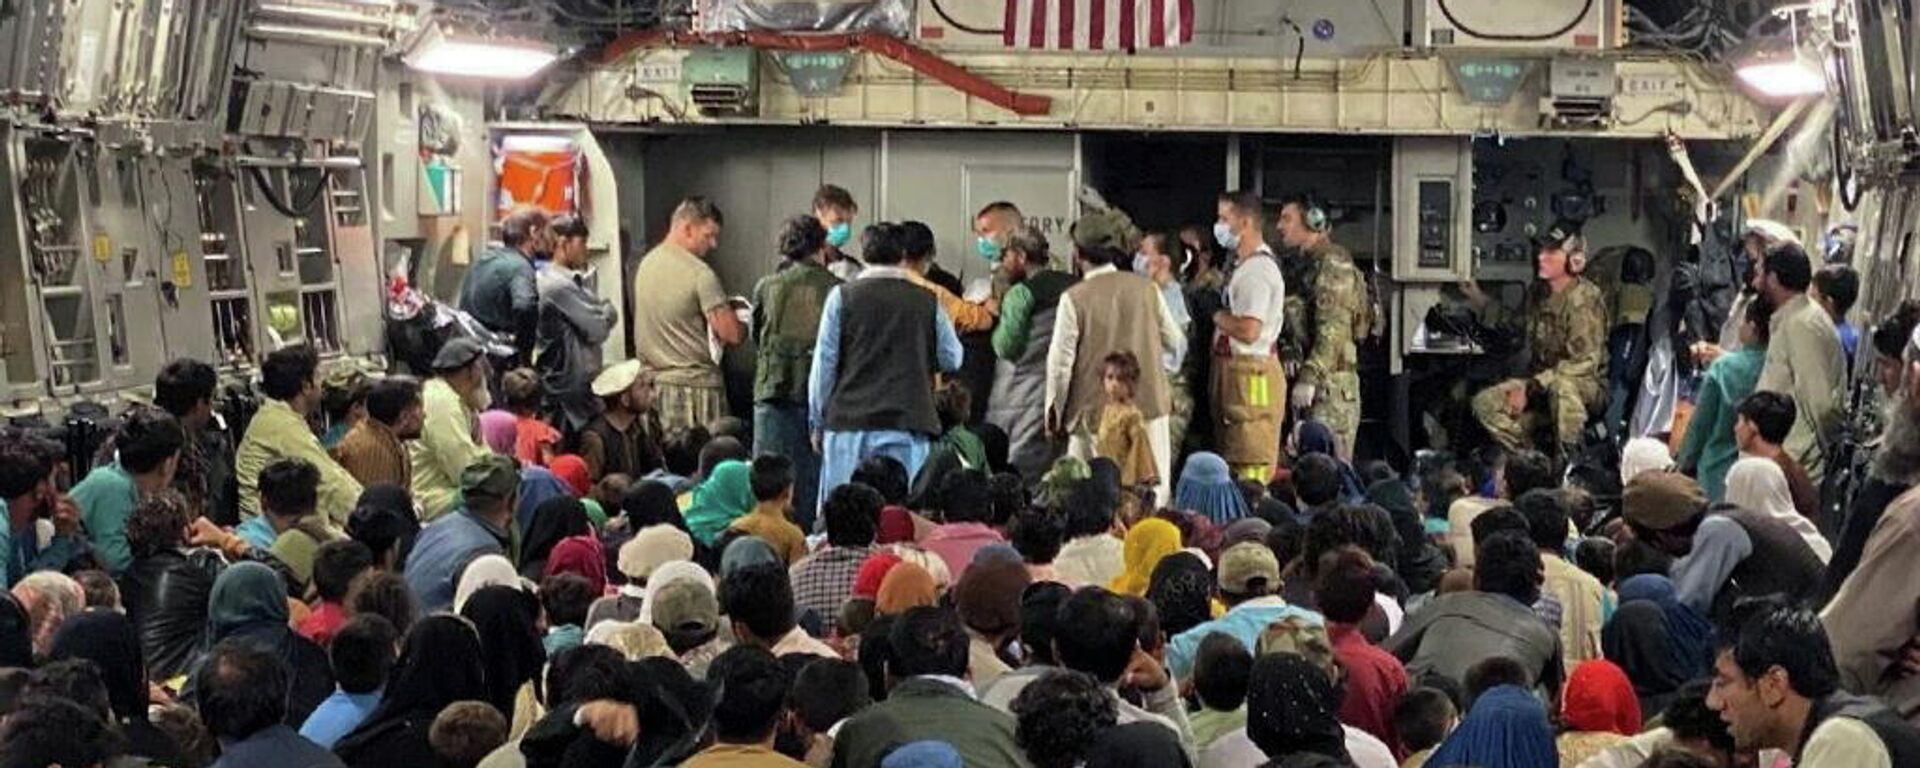 Эвакуация беженцев из Афганистана на военном самолете США - Sputnik Грузия, 1920, 26.08.2021